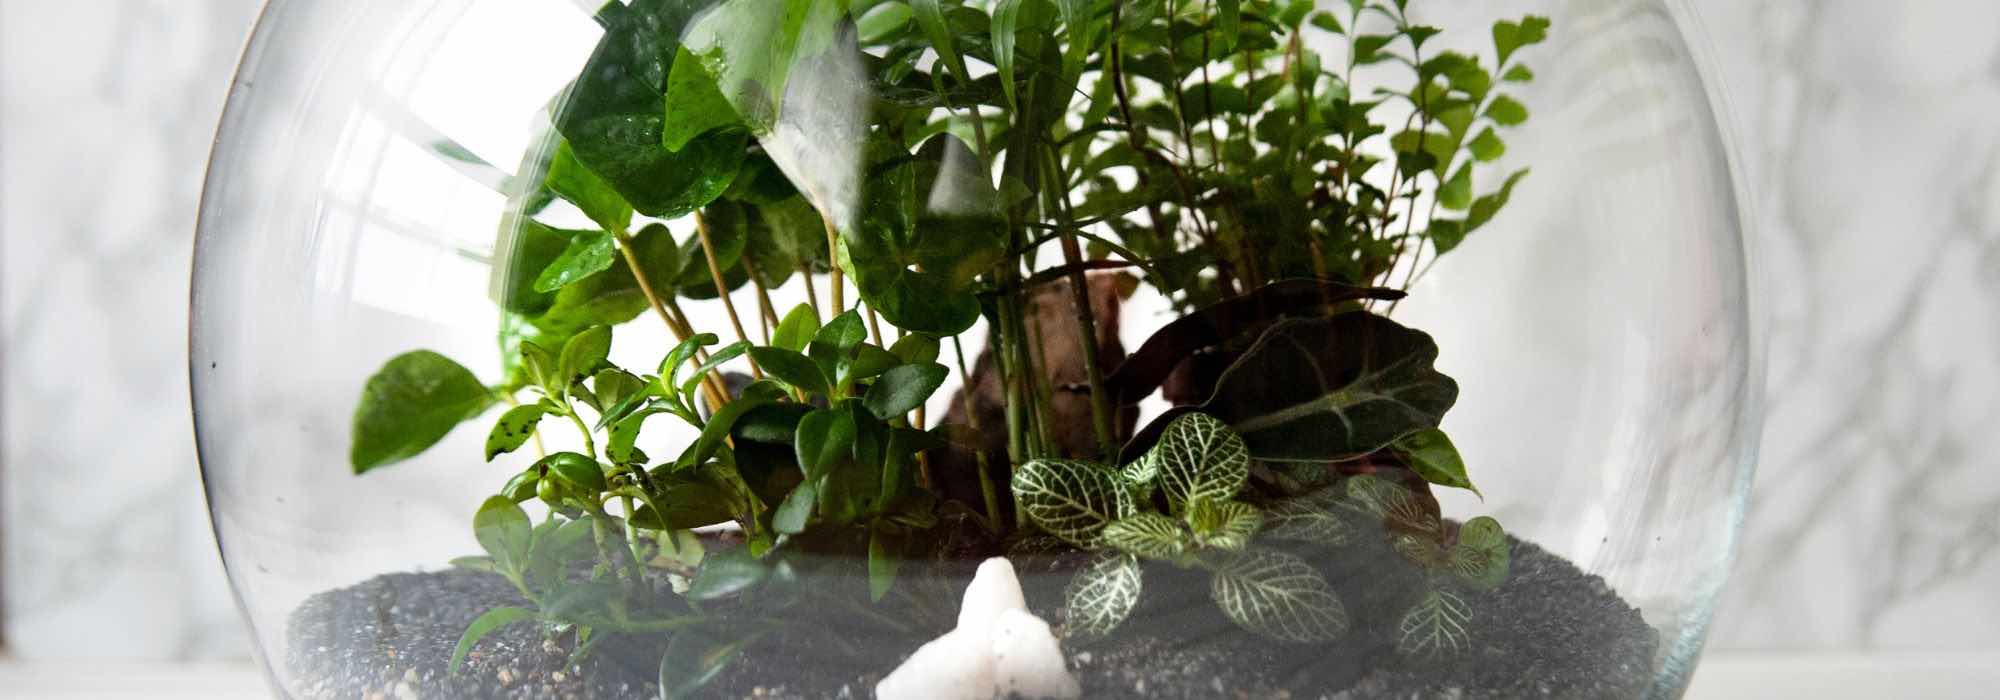 Choix des plantes pour un terrarium